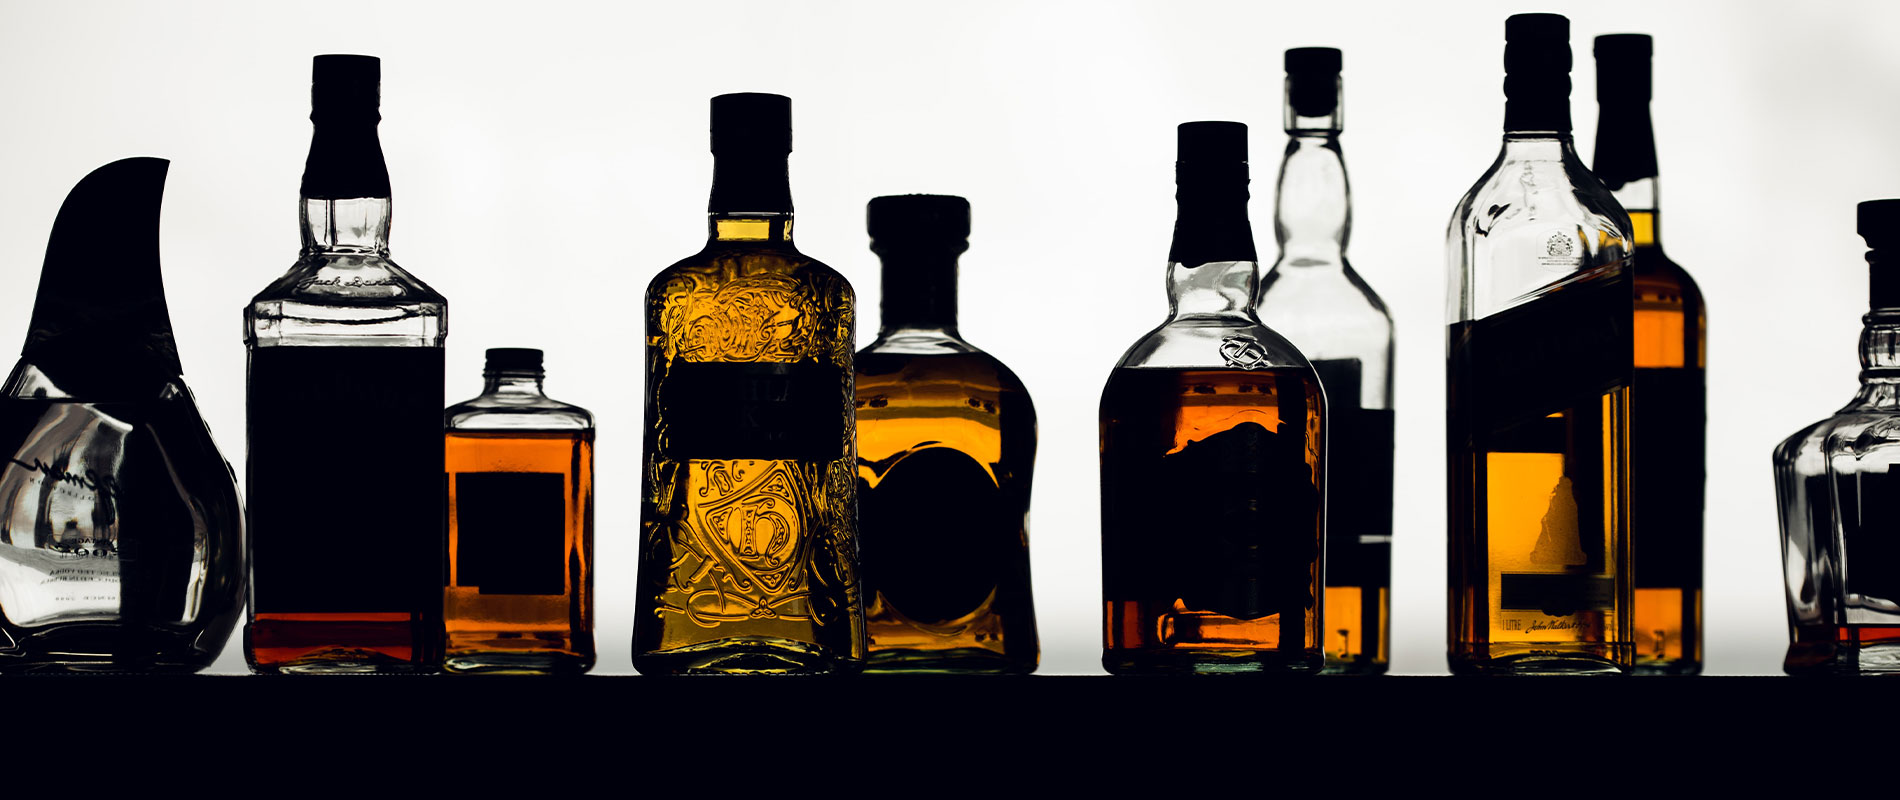 image row of glass liquor bottles